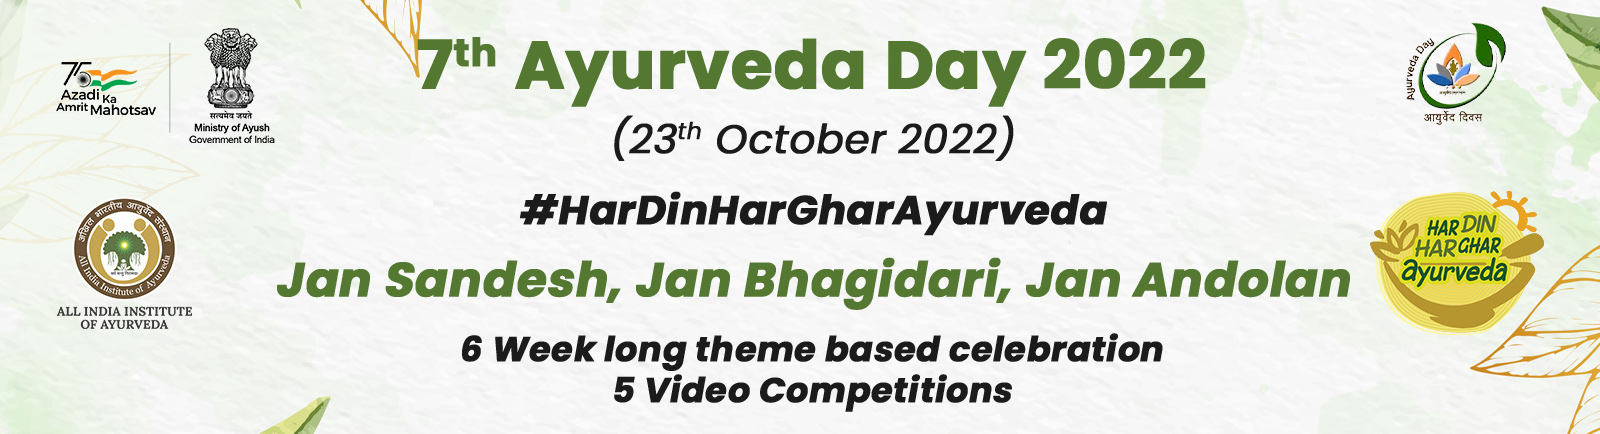 Celebration of 7th Ayurveda Day